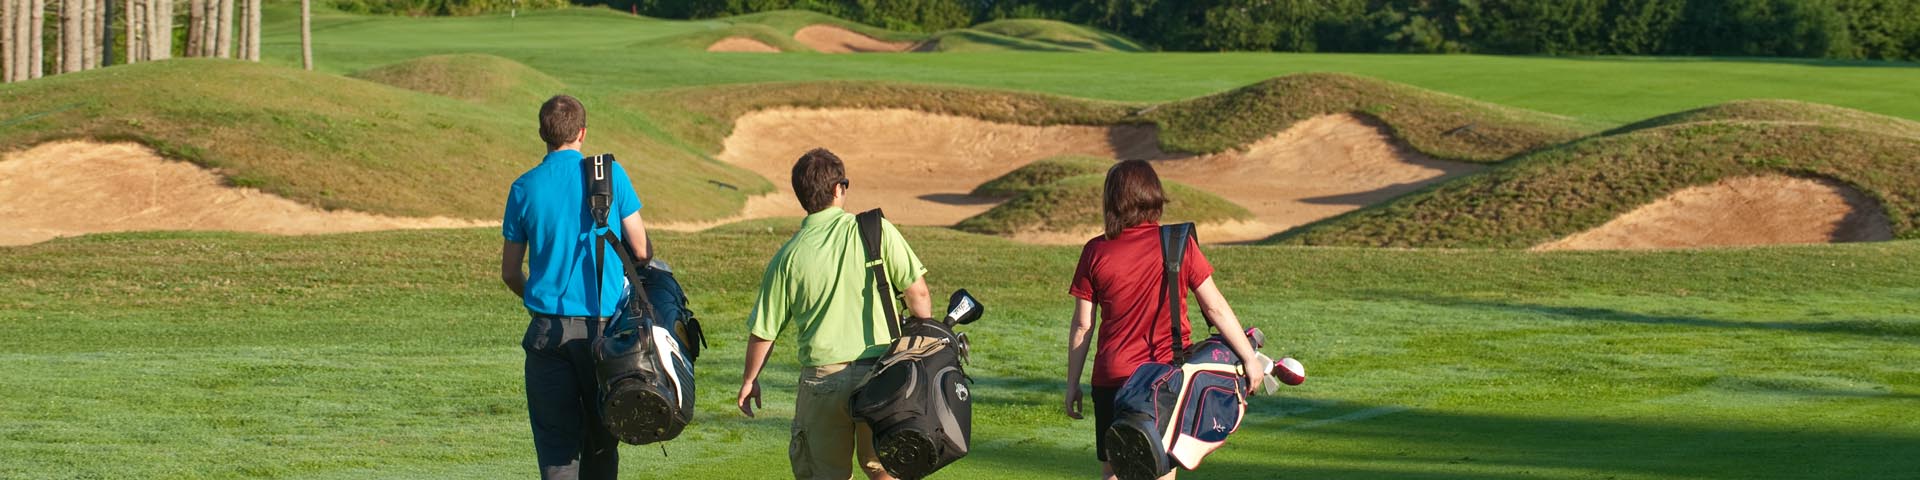 Golfeurs au terrain de golf Green Gables en avant-plan, plage de Cavendish en arrière-plan